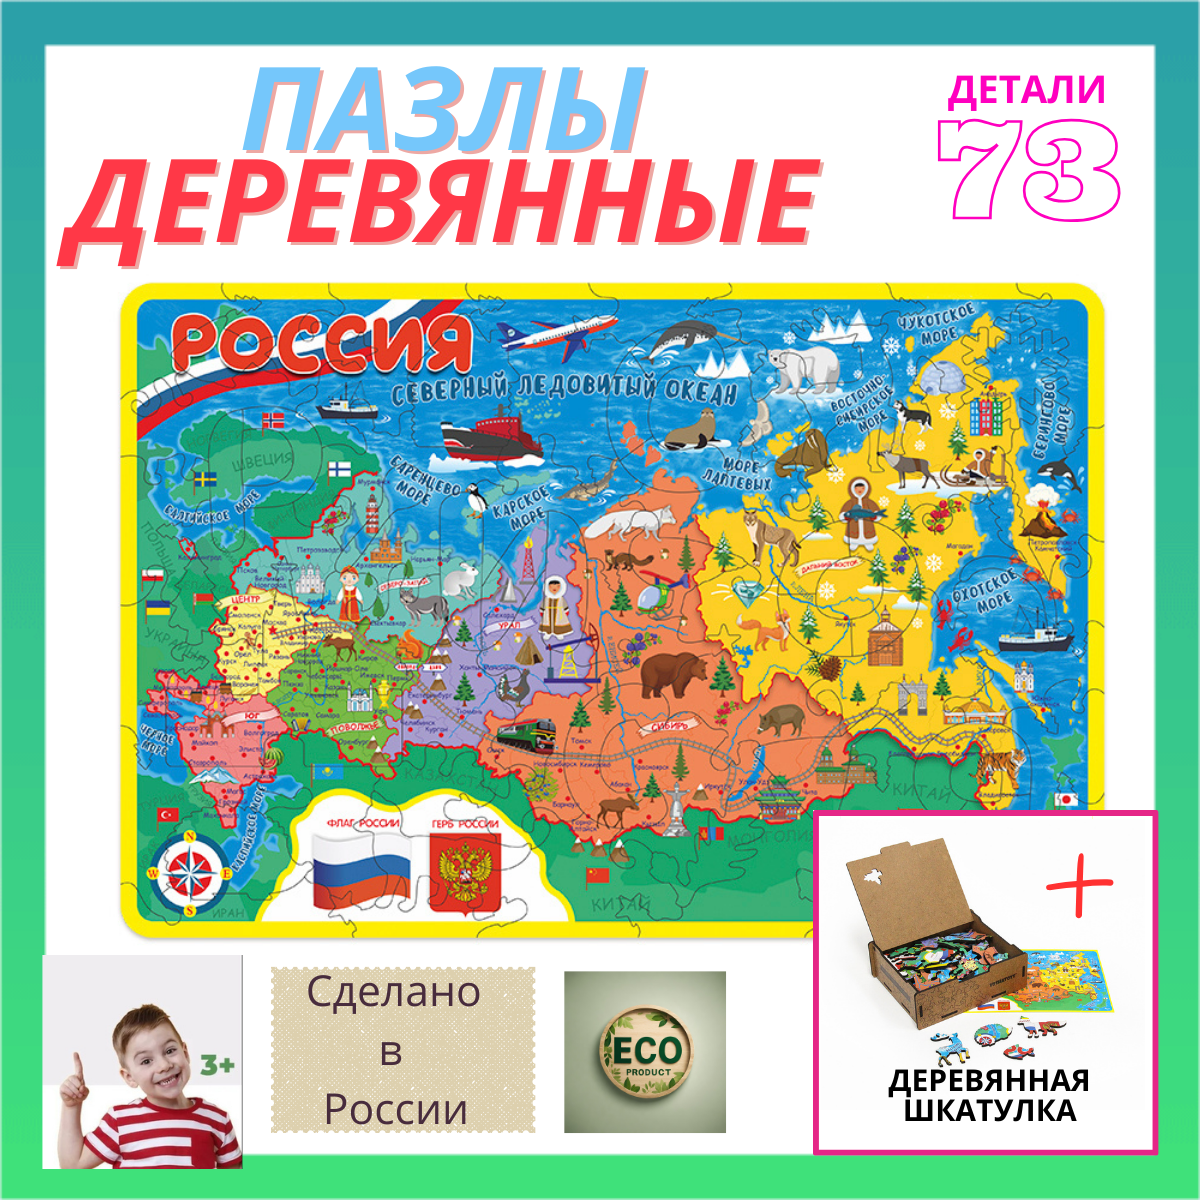 Пазл деревянный Карта России в шкатулке, 30х20 см, 73 детали. Пазлы для детей